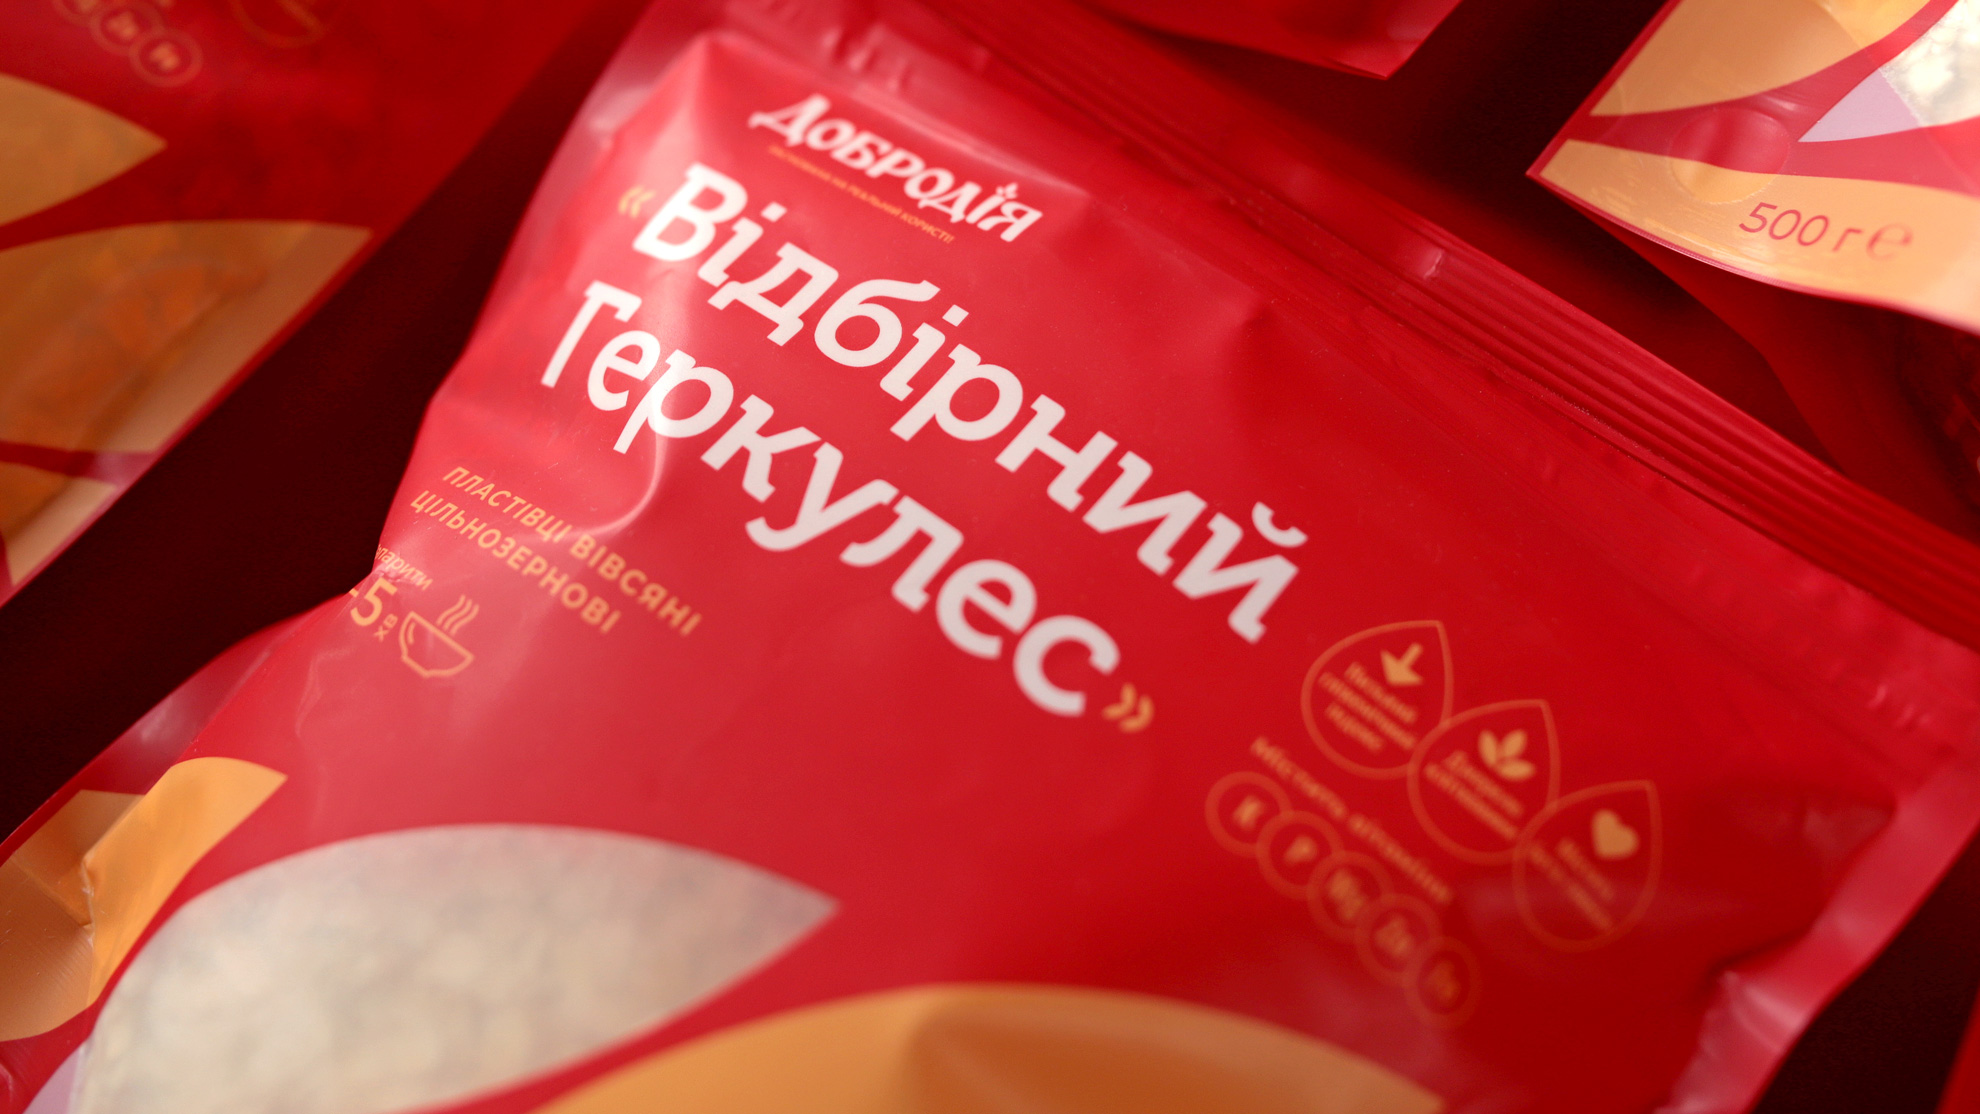 Packaging Design for Dobrodia - The New Oatmeal Porridge - World Brand  Design Society